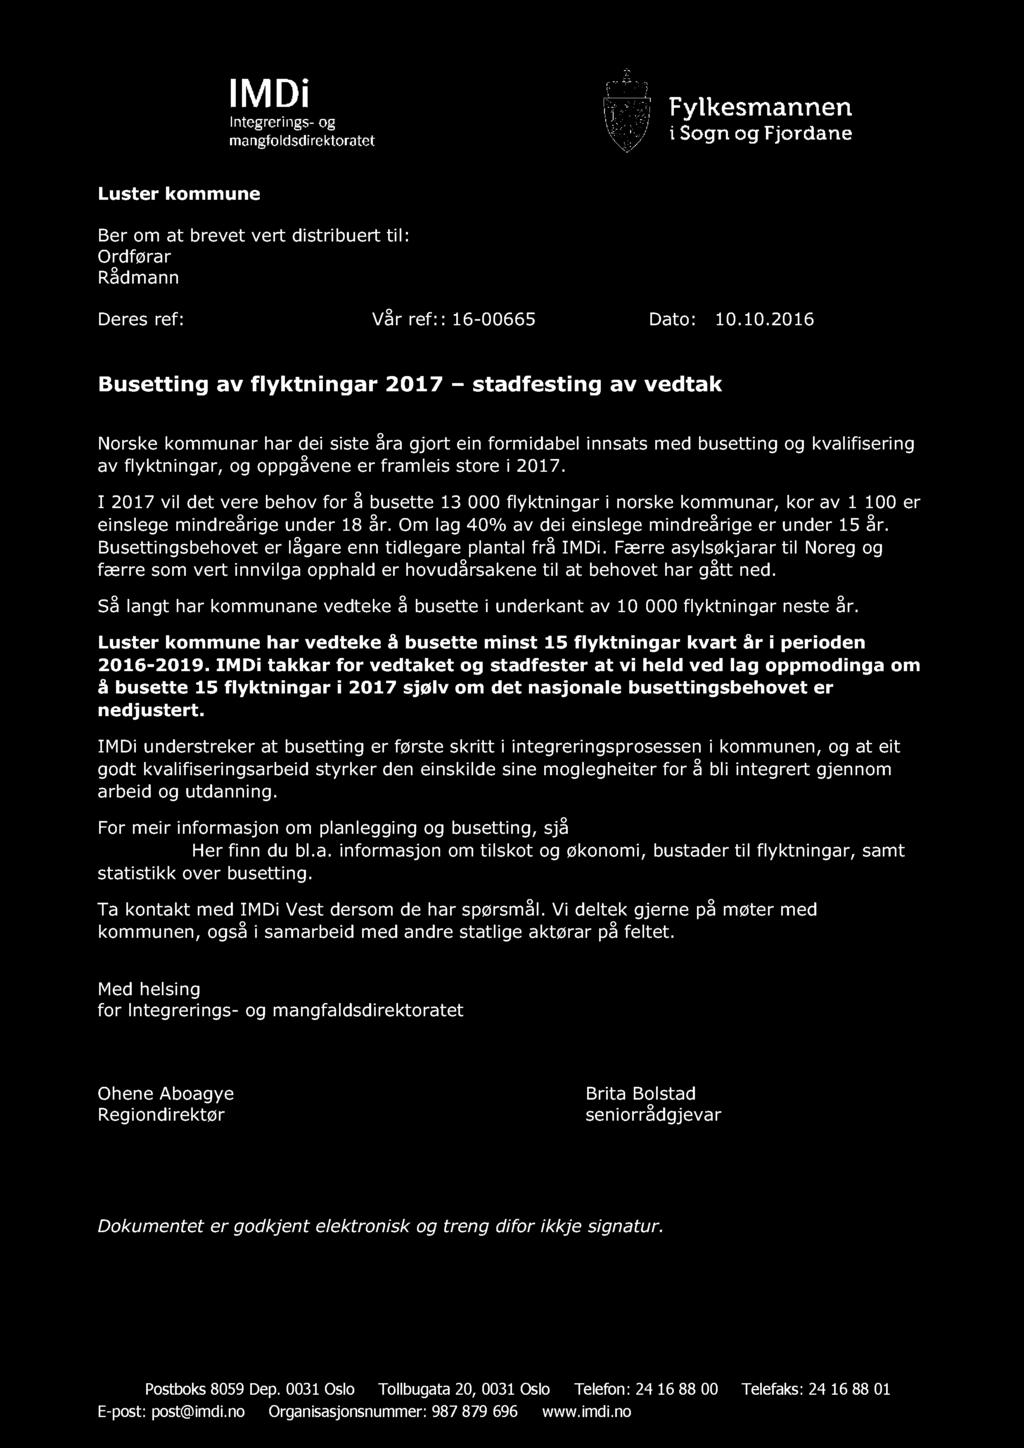 Luster kommune Ber om at brevet vert distribuert Ordførar Rådmann til: Deres ref: Vår ref: : 16-00665 Dato: 10.